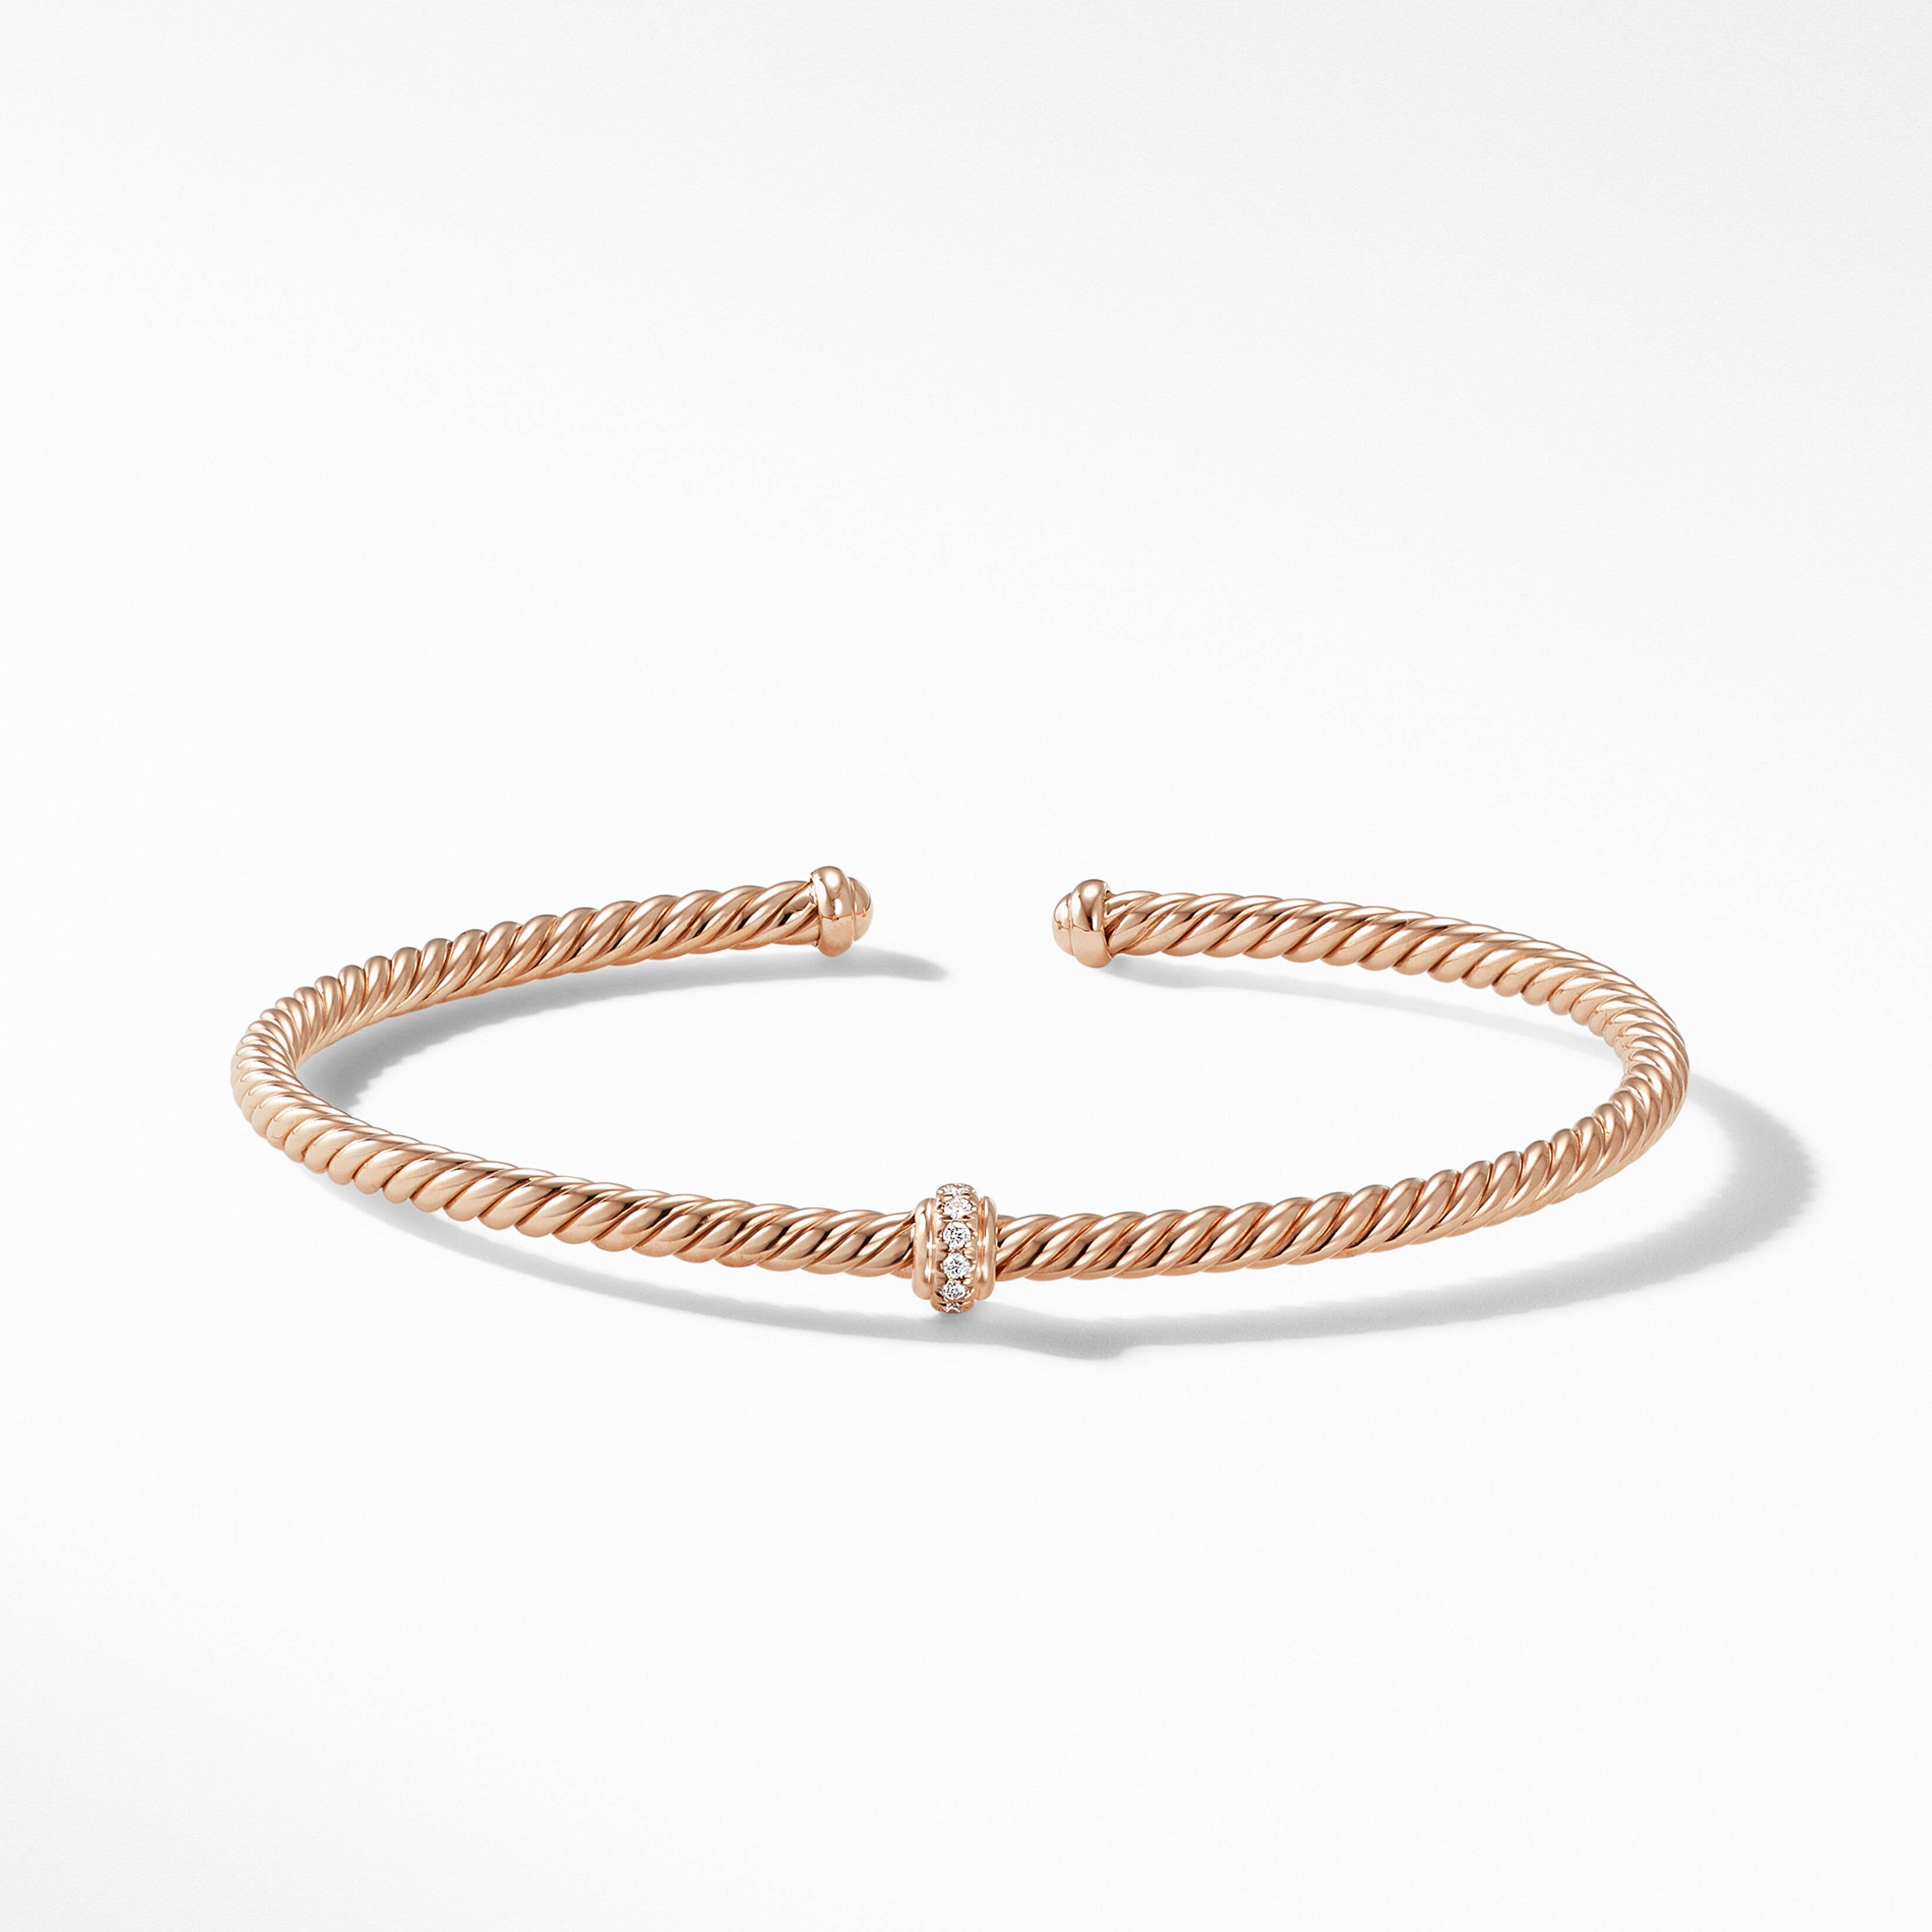 Cablespira® Station Bracelet in 18K Rose Gold with Pavé Diamonds